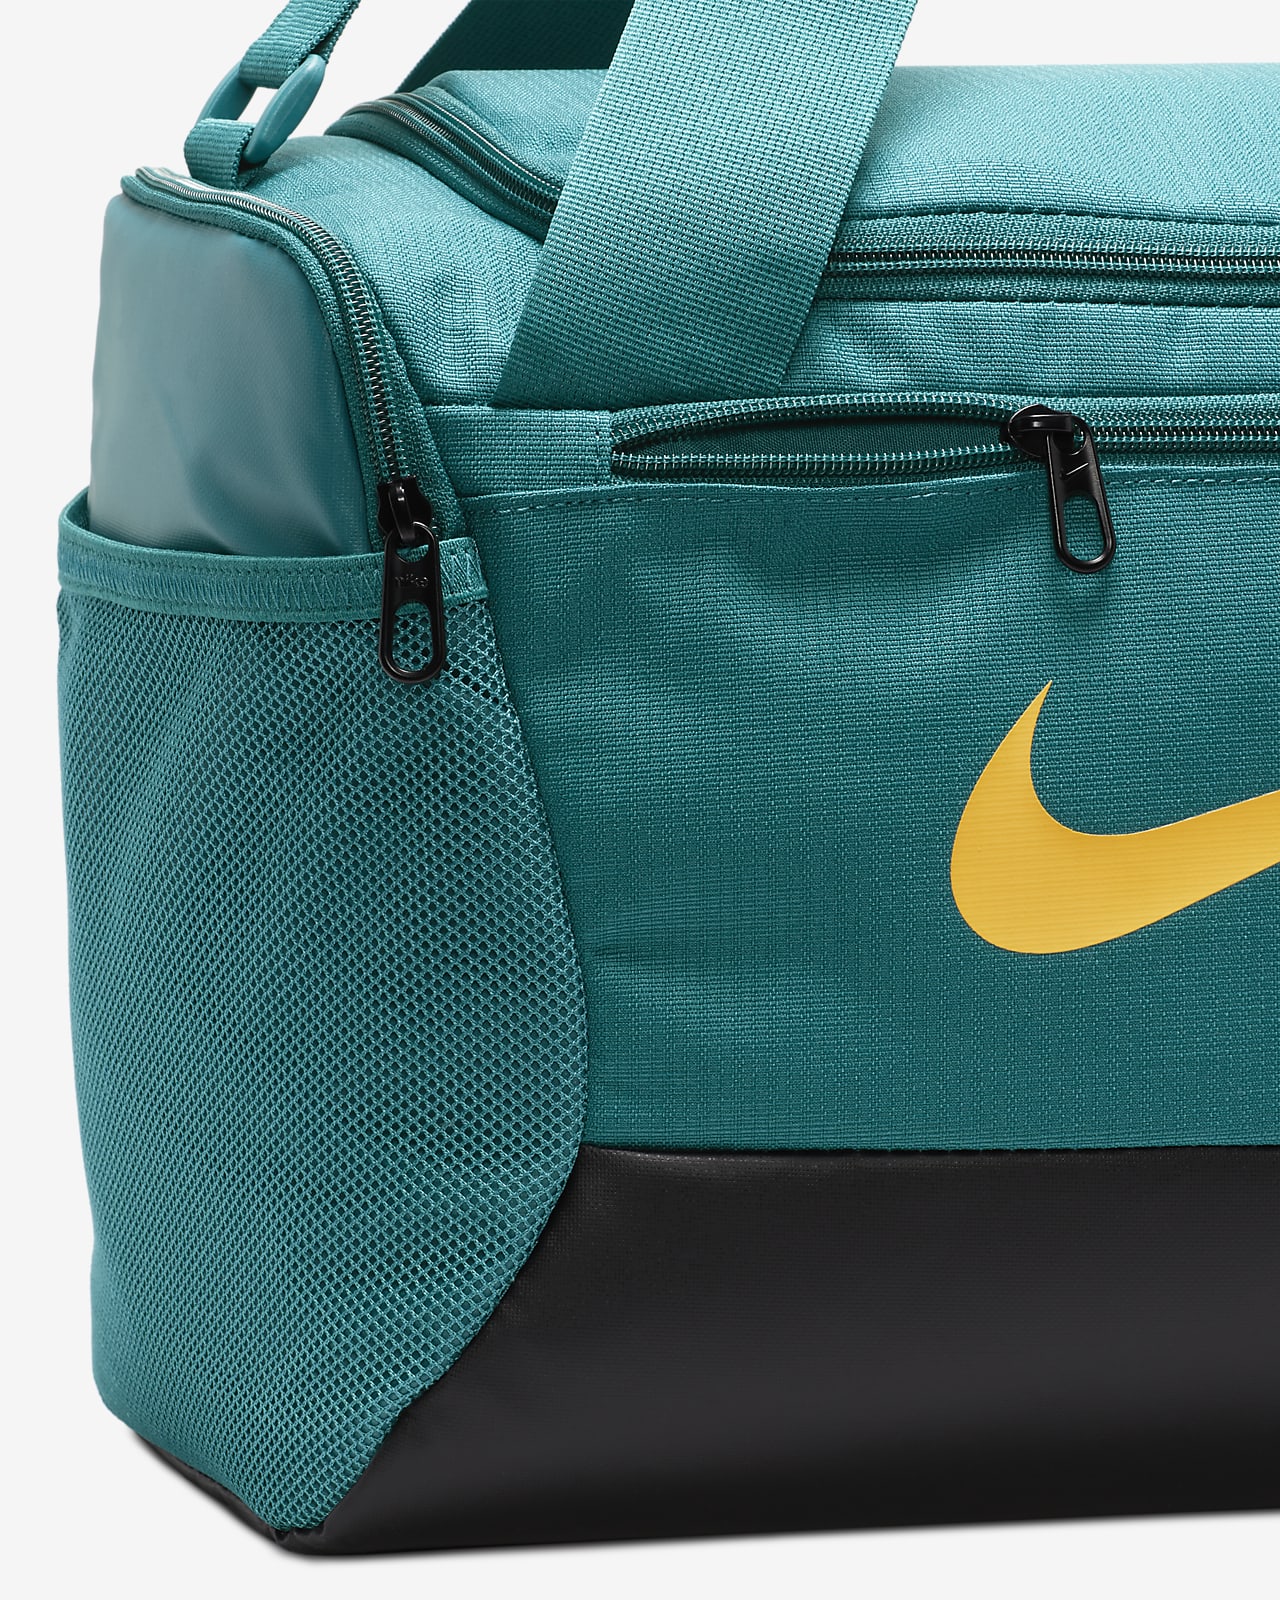 Torba treningowa Nike Brasilia 9.5 (rozmiar XS, l). Nike